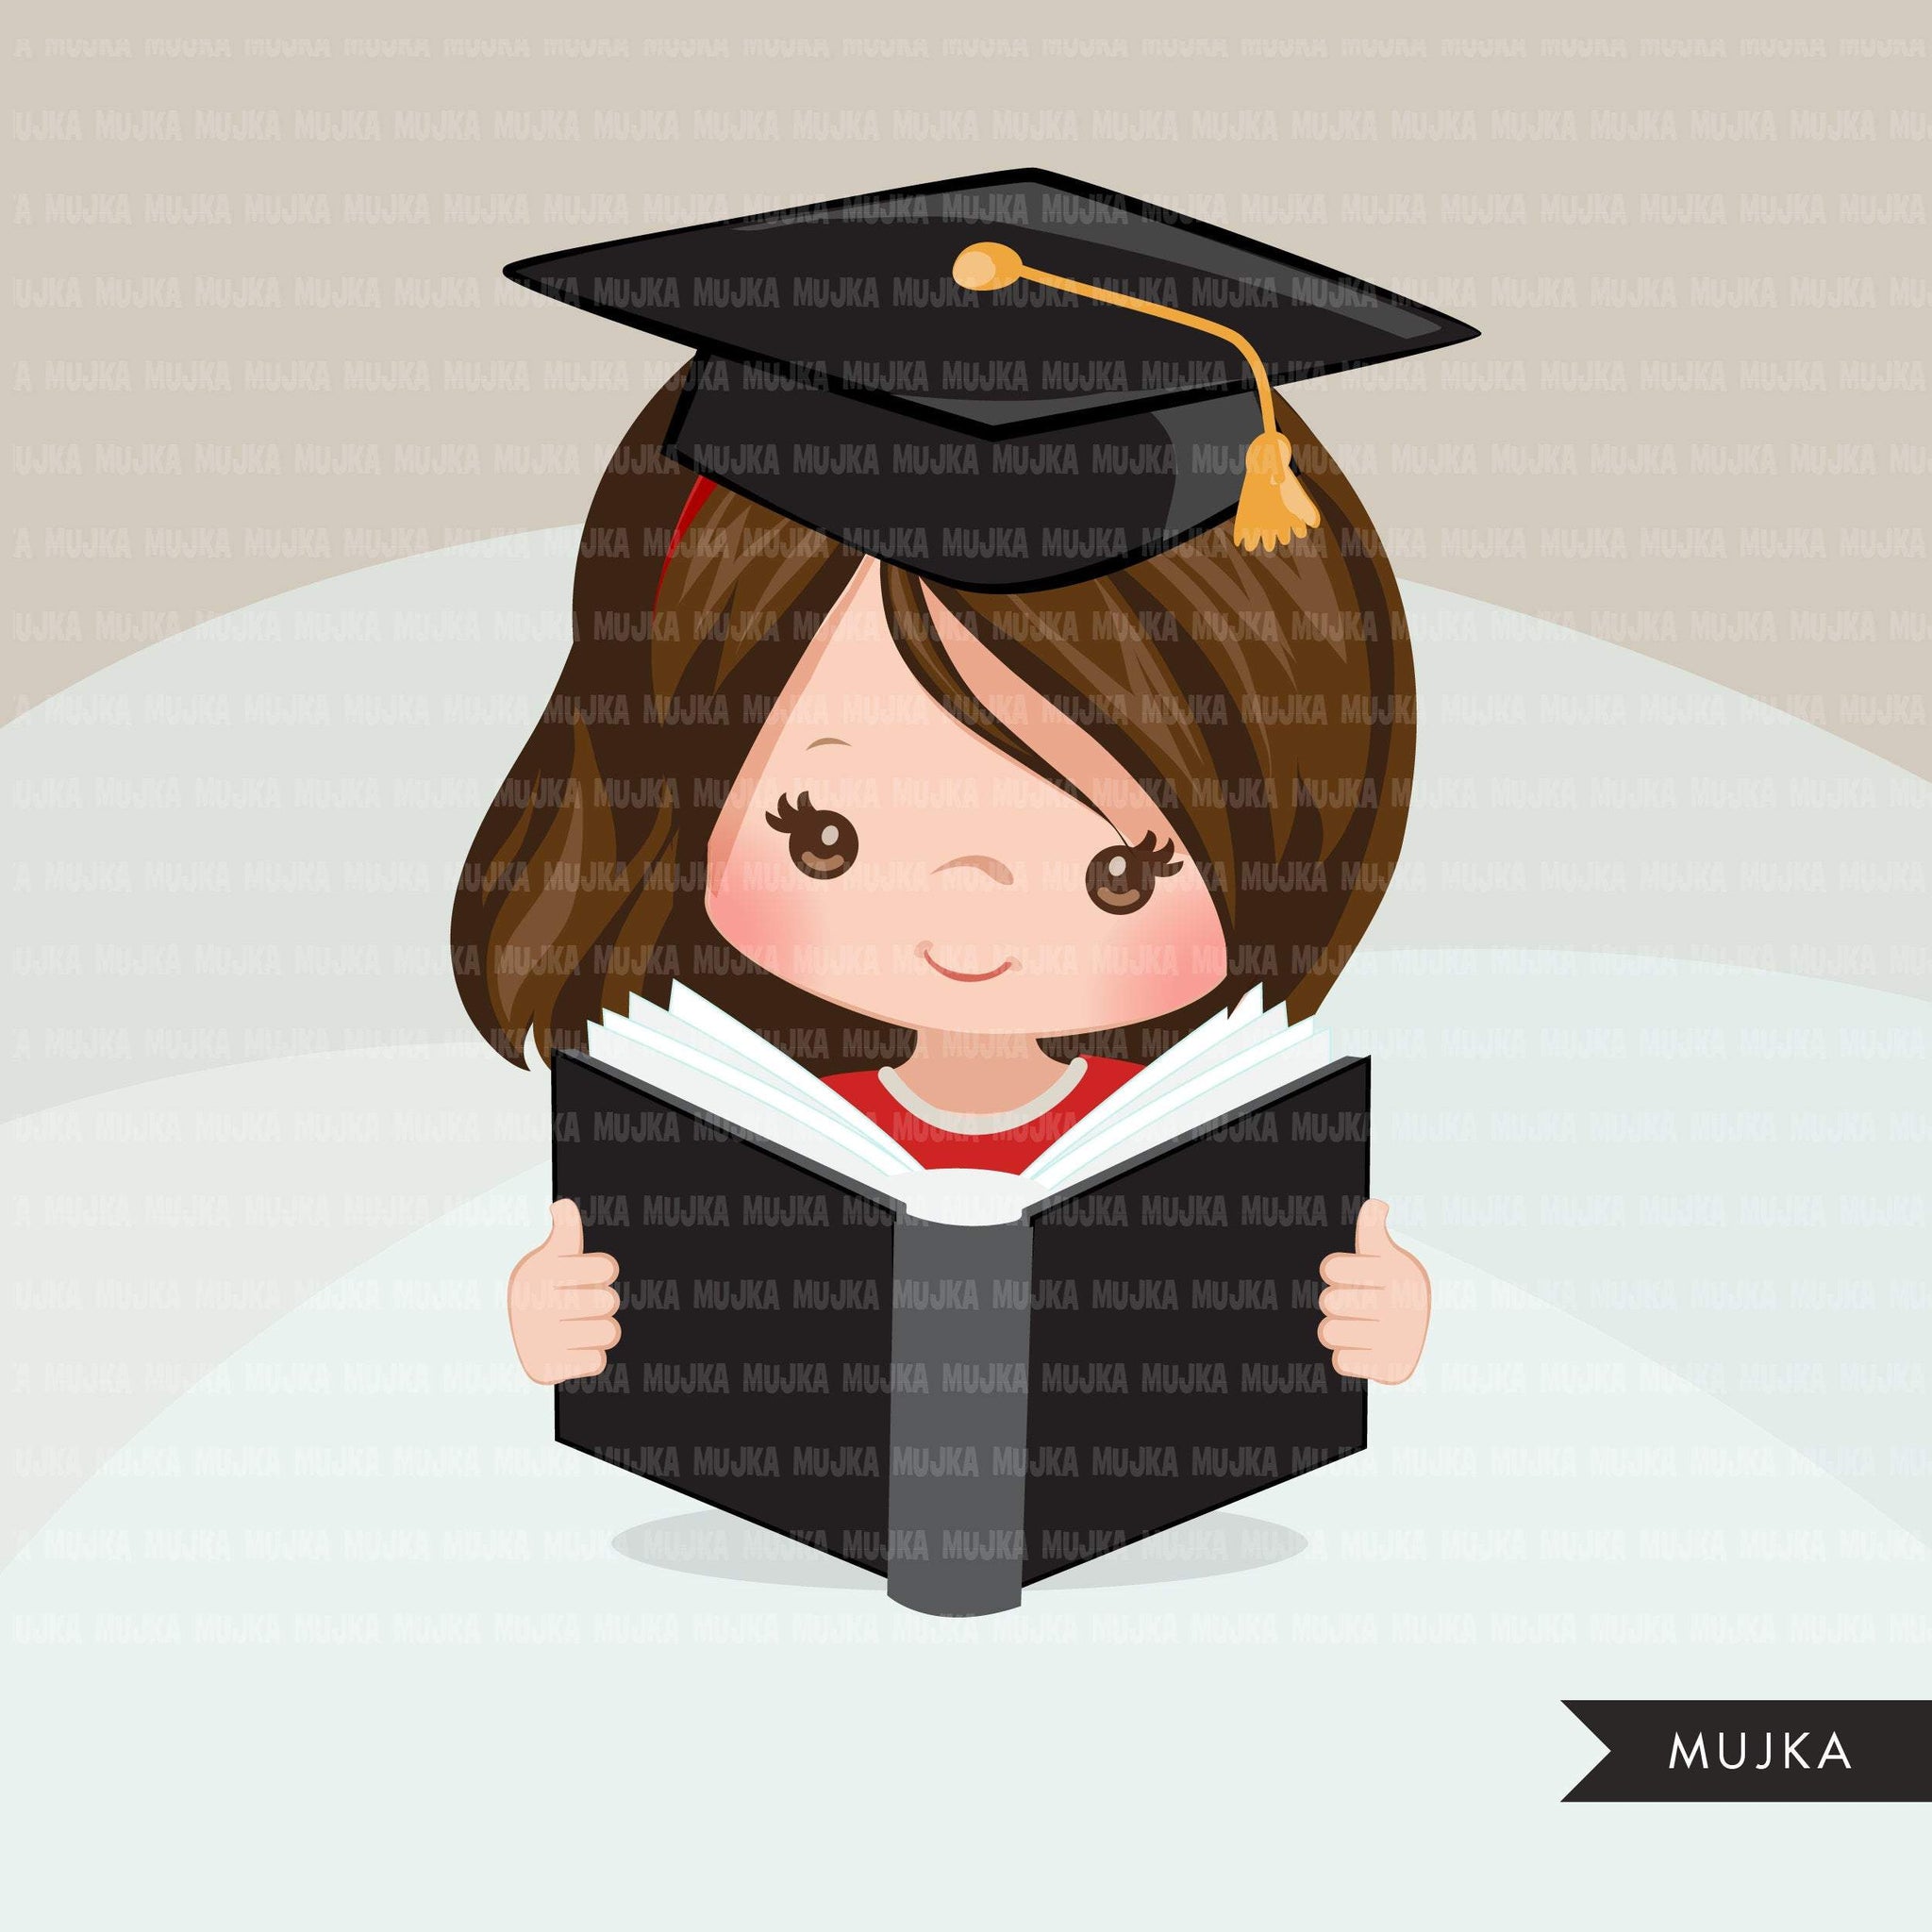 graduation clipart graphics